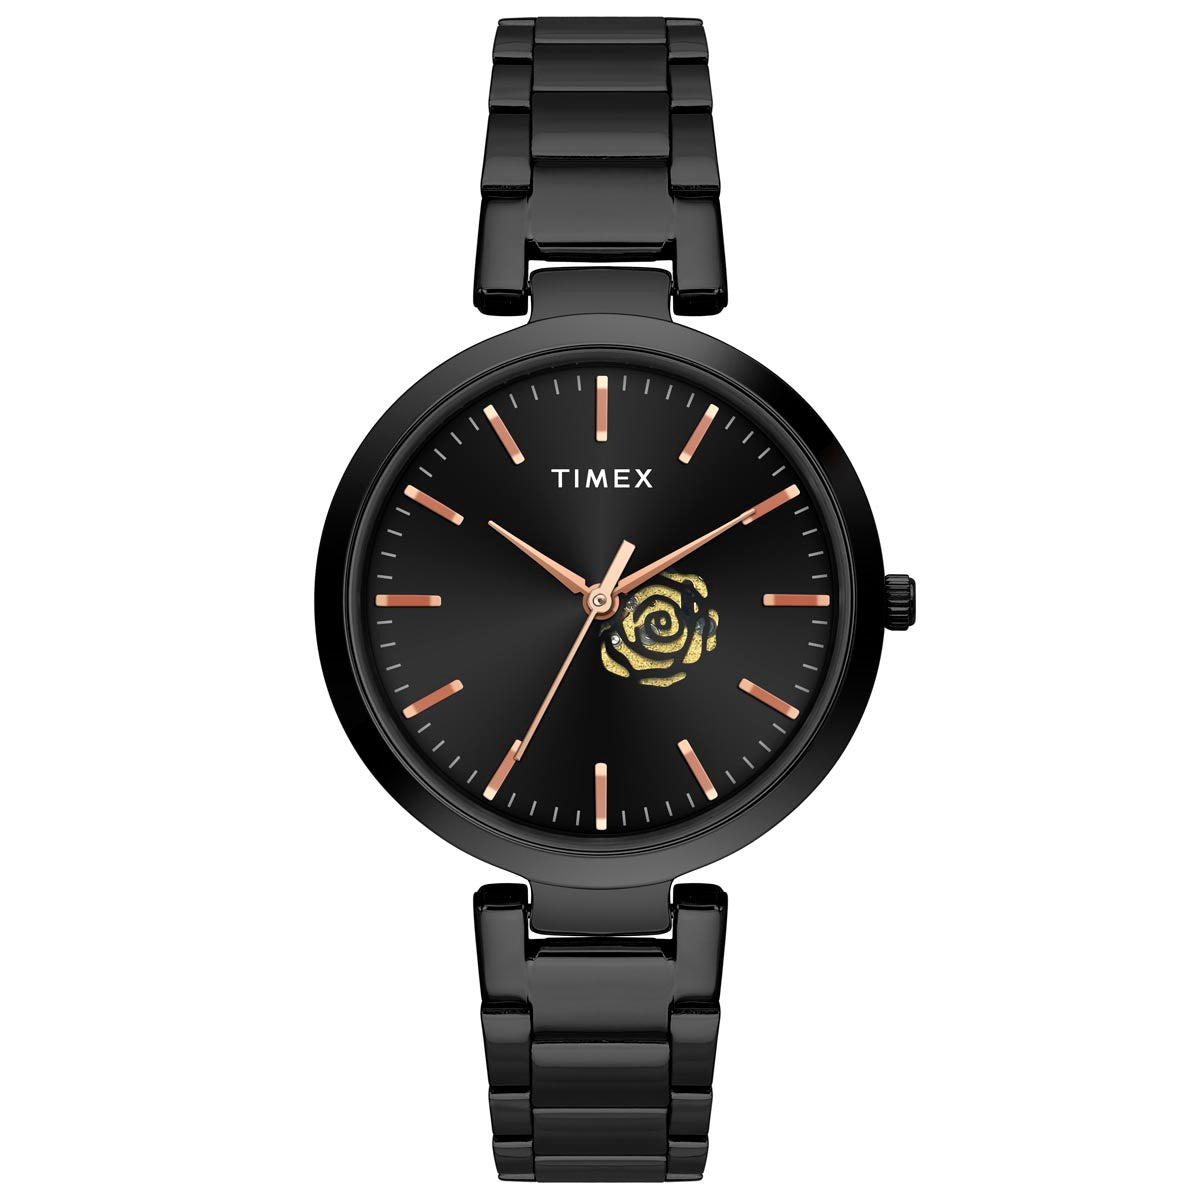 Timex Standard Watch Review | GearJunkie